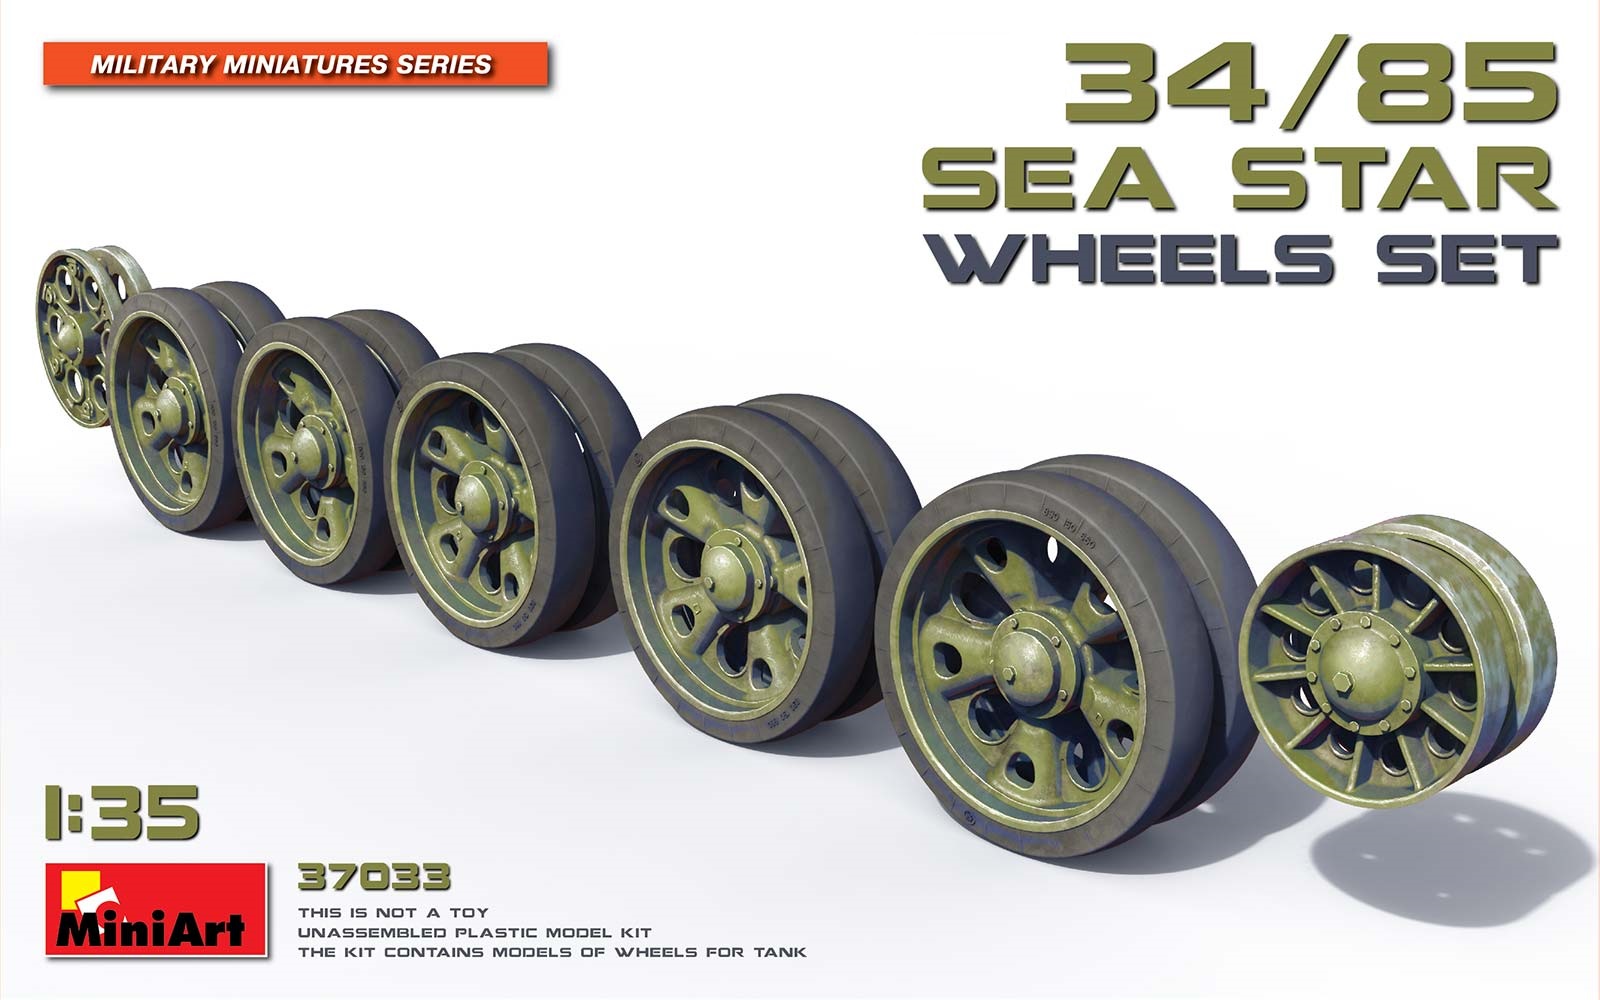 37033  дополнения из пластика  Танк-34/85 SEA STAR Wheels Set  (1:35)